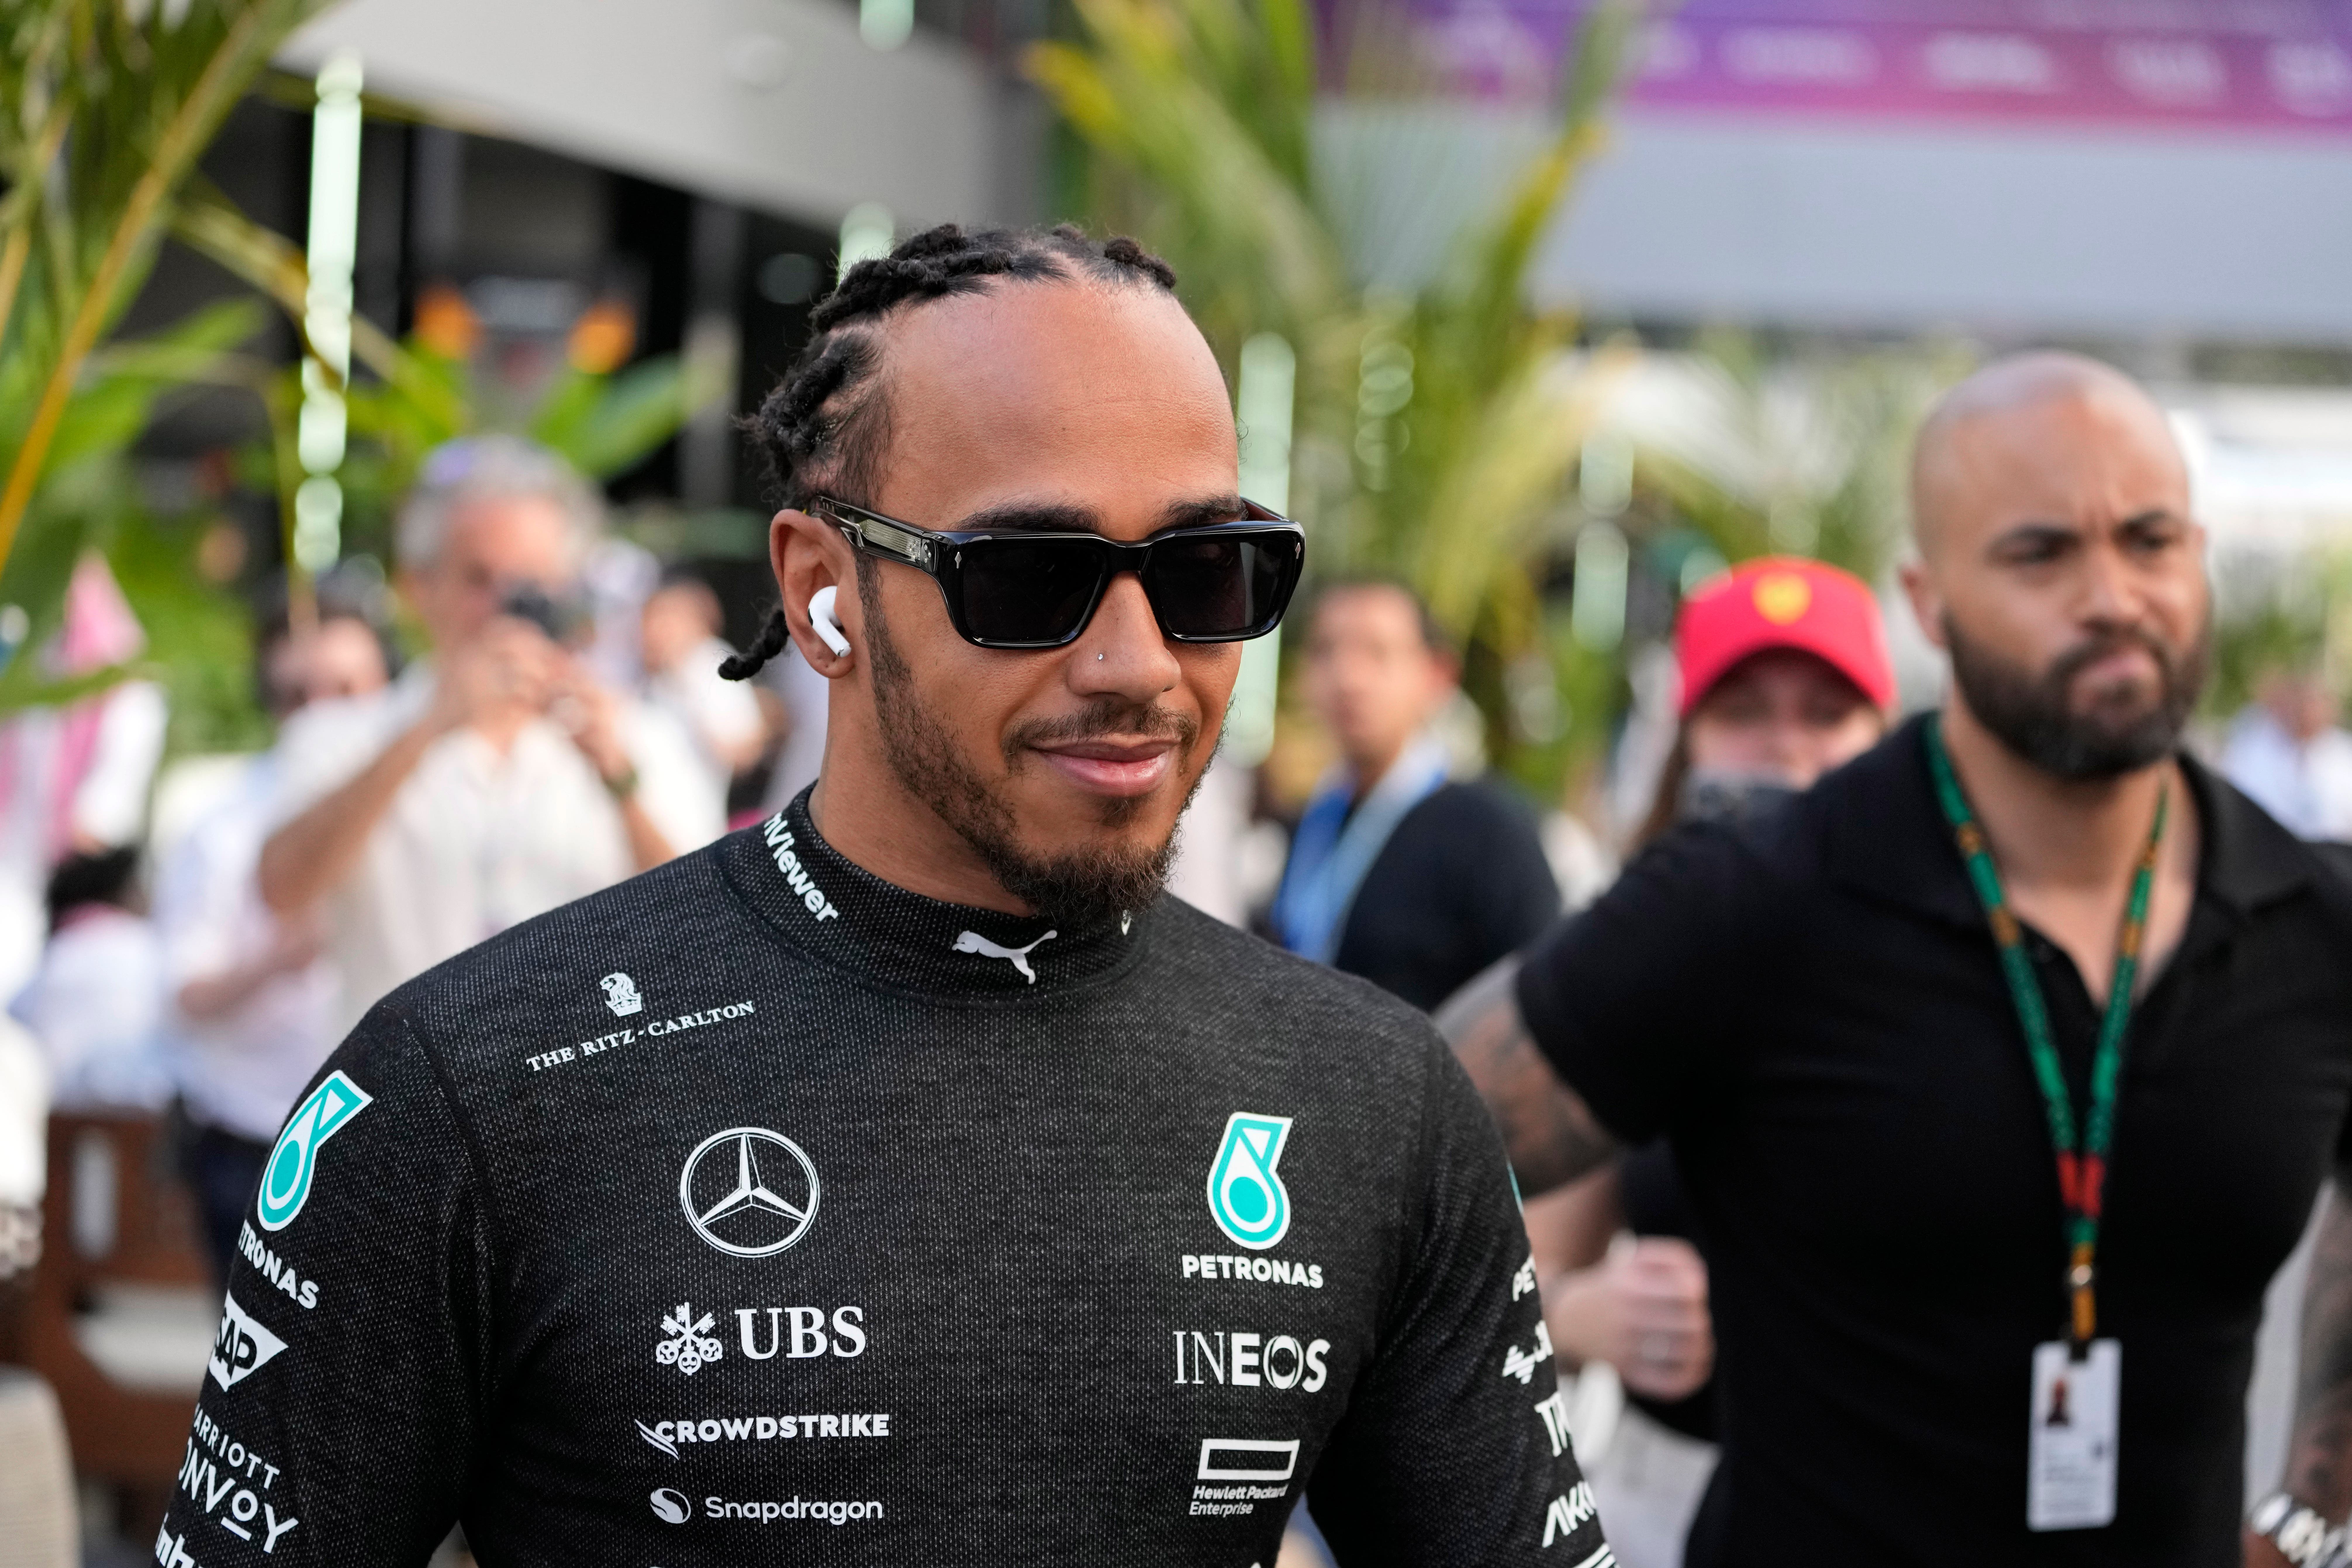 Lewis Hamilton prepares for practice at the Saudi Arabian Grand Prix (Darko Bandic/AP)